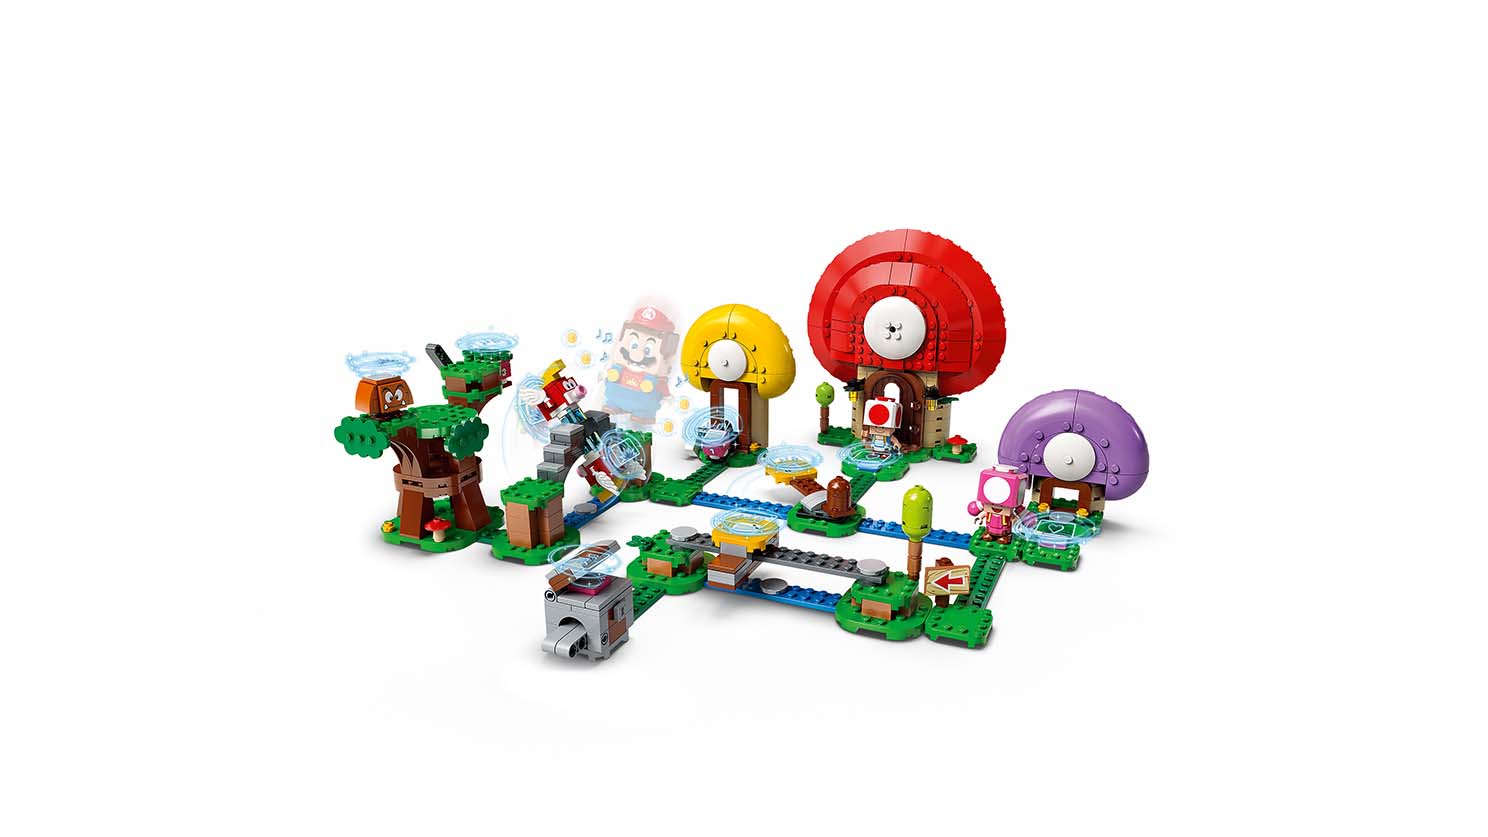 キノピオ と 宝さがし 71368 - レゴ®スーパーマリオ - LEGO.comキッズ